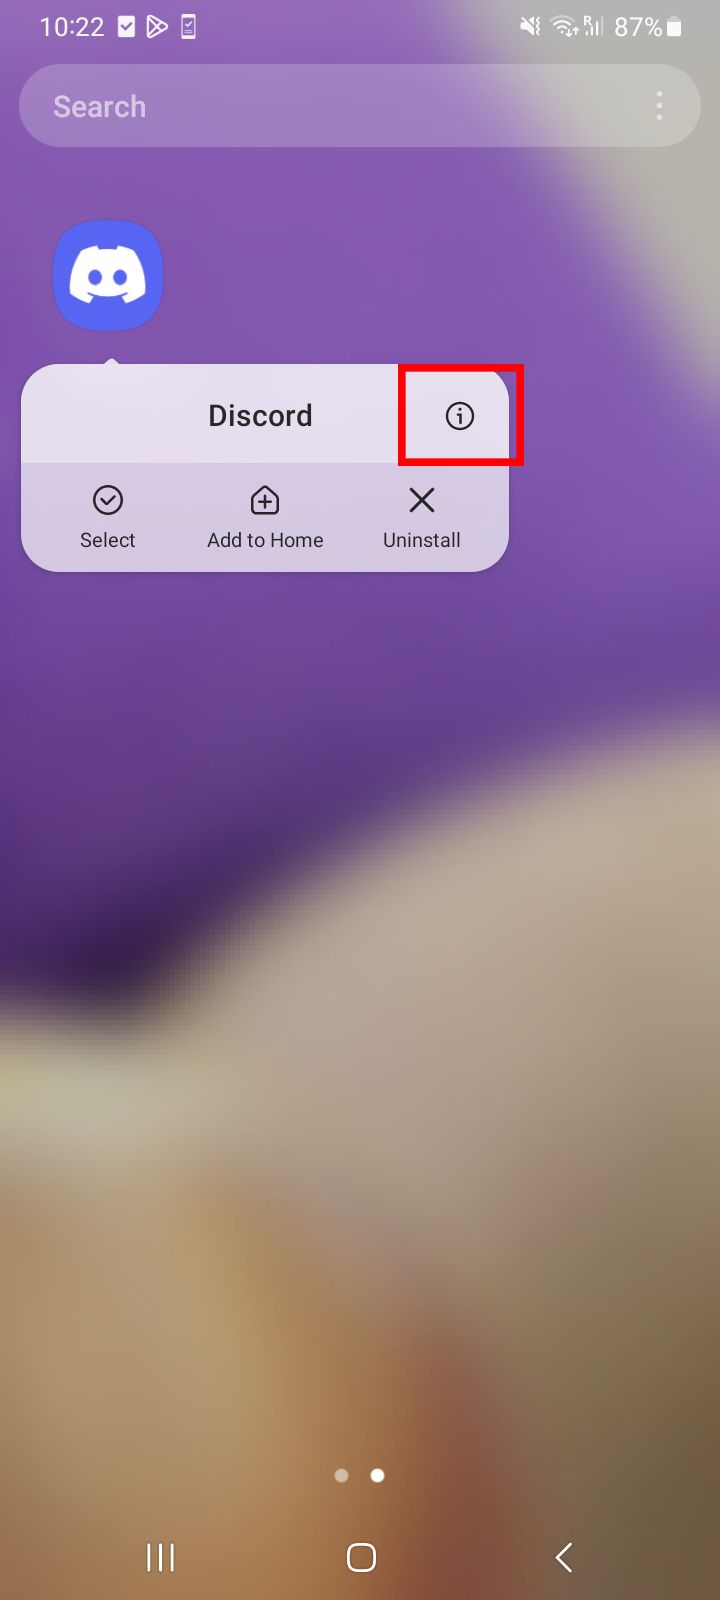 Uma tela do Android exibindo o aplicativo Discord com opções para selecionar, adicionar à página inicial ou desinstalar